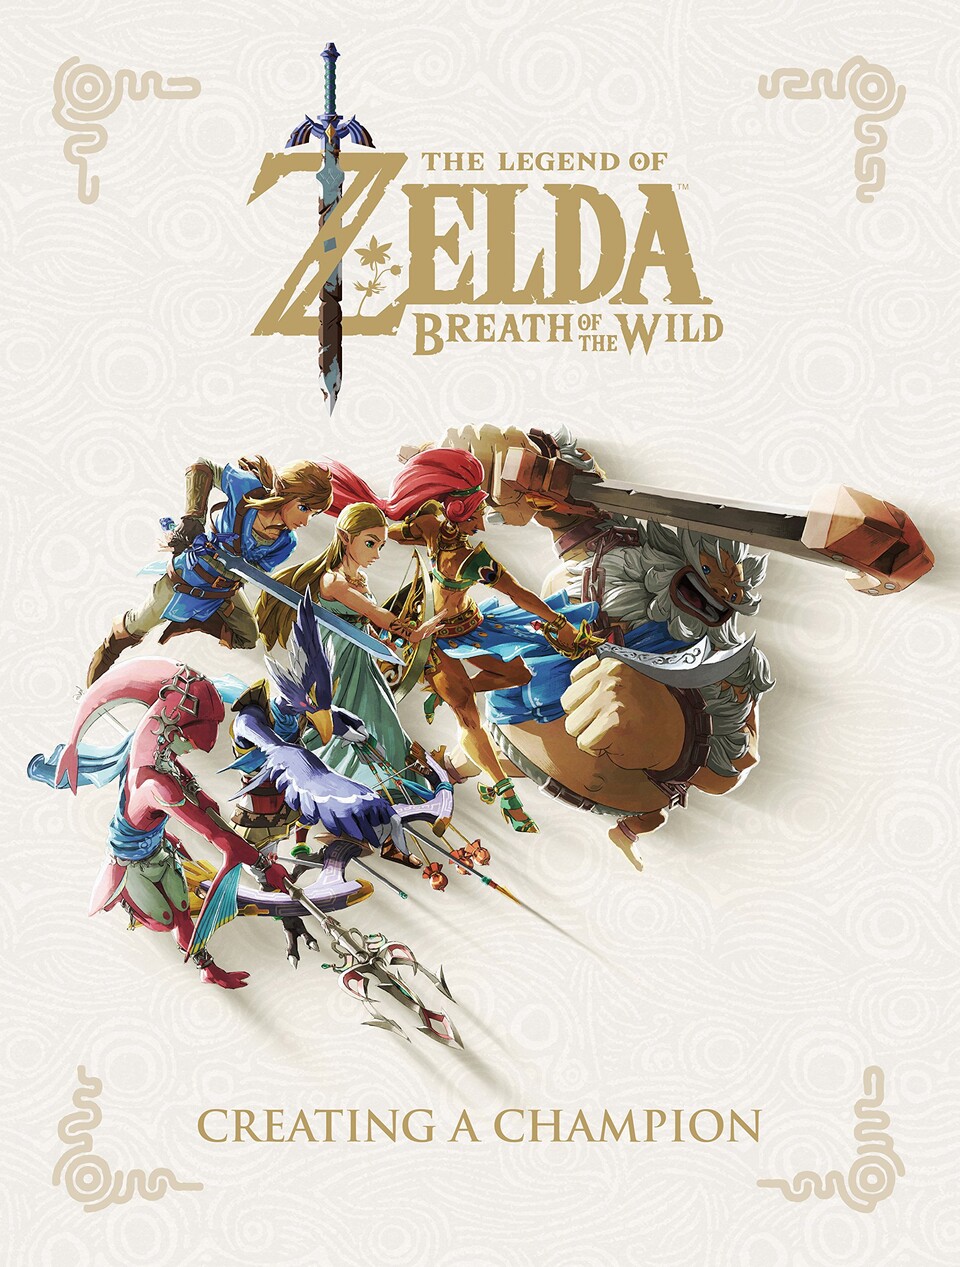 So sieht momentan das Cover von The Legend of Zelda: Breath of the Wild - Creating a Champion aus. Das kann sich aber bis November noch ändern.